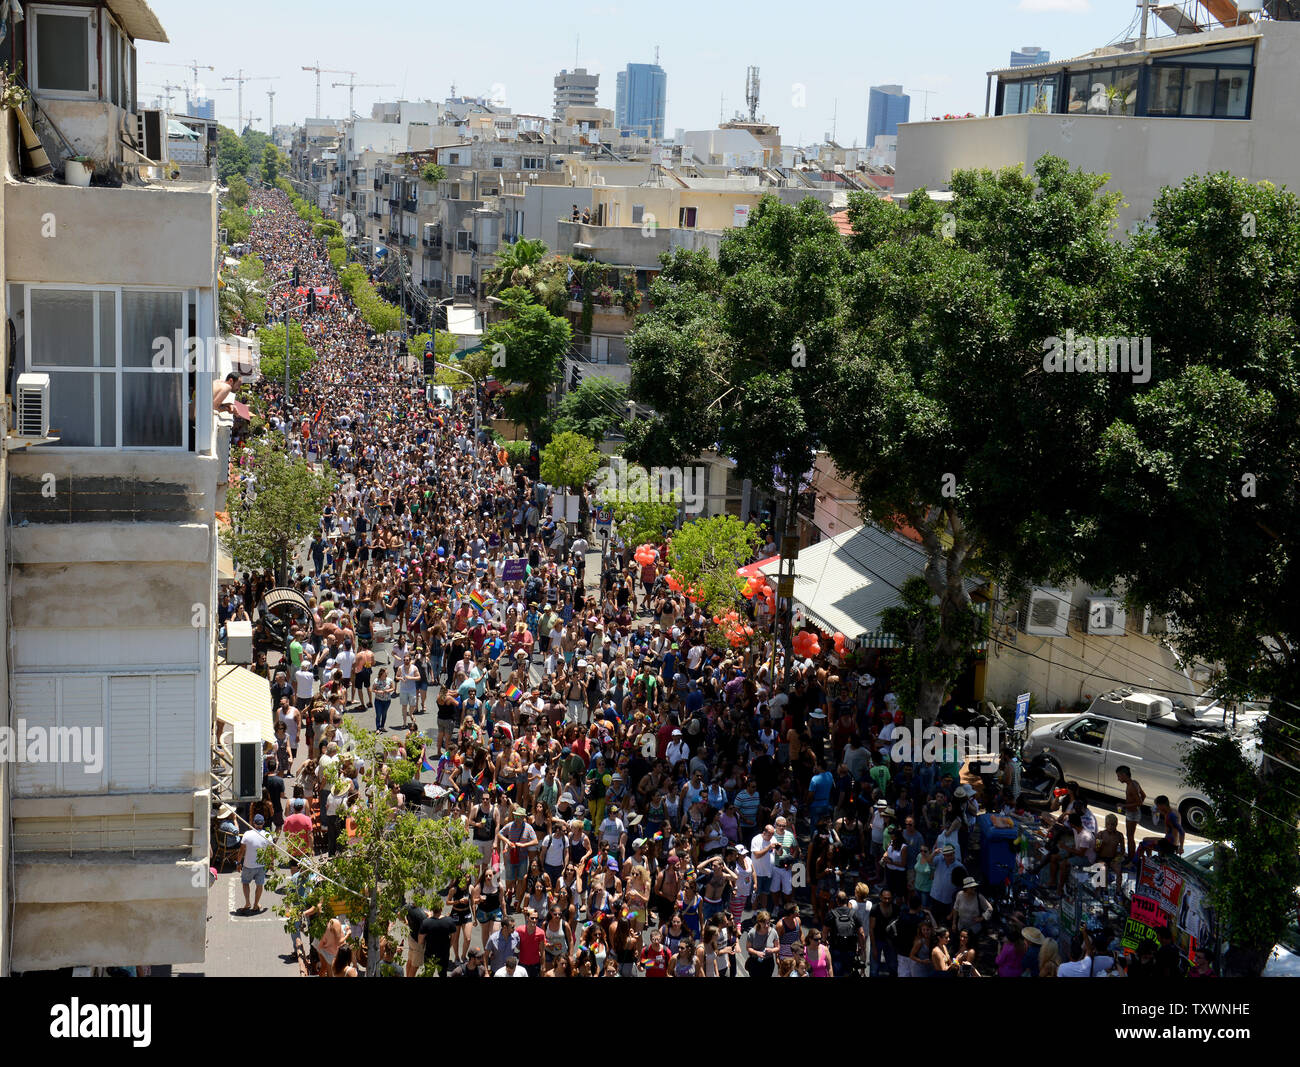 Un resumen de la multitud marchando en la 17ª anual Desfile del Orgullo Gay en Tel Aviv, Israel, 12 de junio de 2015. Más de 180.000 marcharon en el desfile, incluidos 30.000 turistas. El tema del desfile fue "Tel Aviv ama todos los géneros", en un esfuerzo por promover la igualdad de derechos a los miembros de la comunidad transgénero. Foto por Debbie Hill/UPI Foto de stock